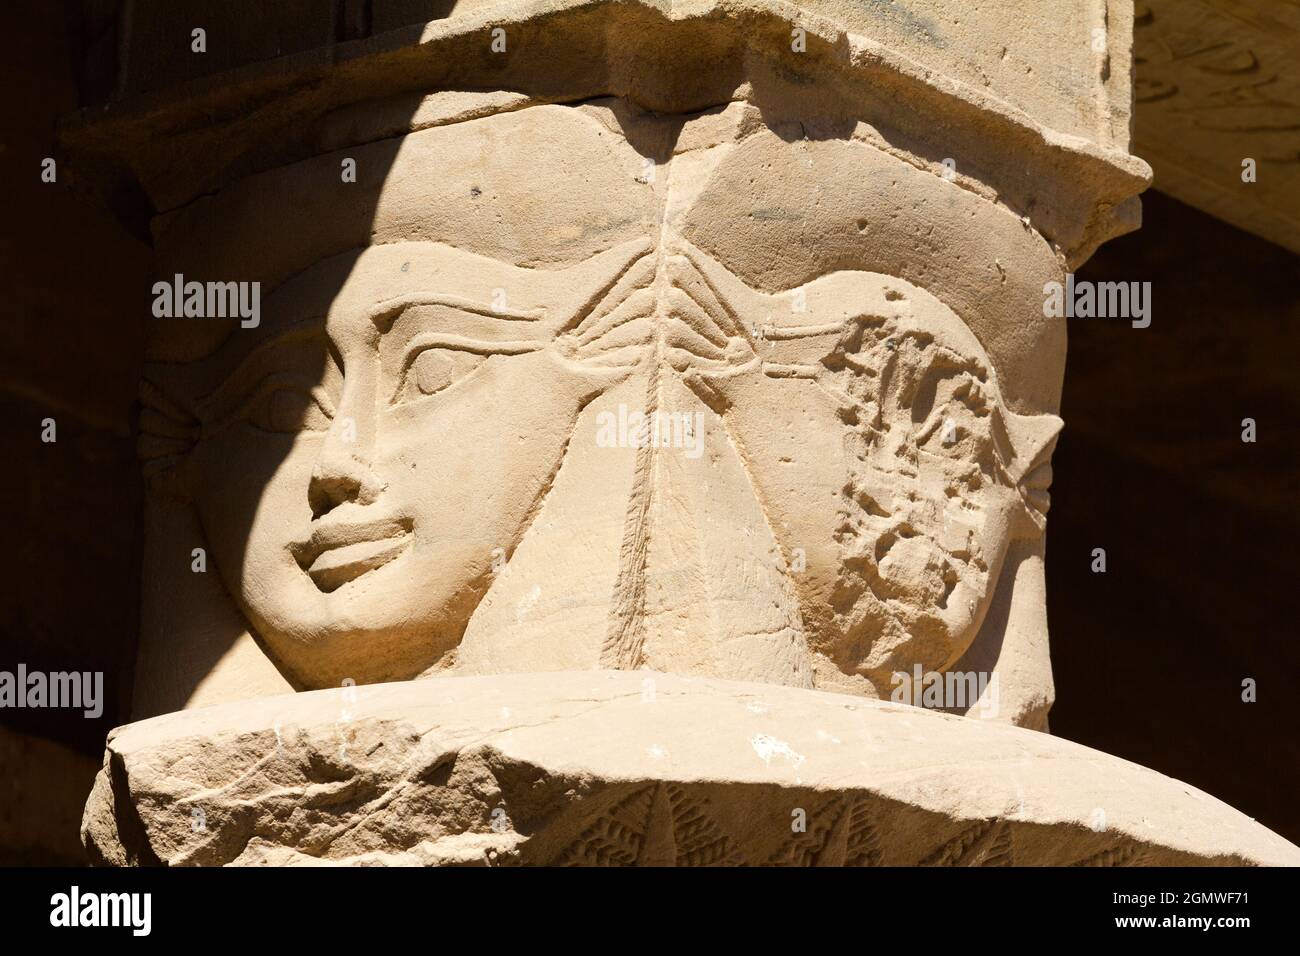 Egitto - 2 dicembre 2010; le figure su una colonna emergono dall'ombra al Tempio di Philae in Egitto. Questo tempio dedicato a Iside era originariamente situato vicino Foto Stock